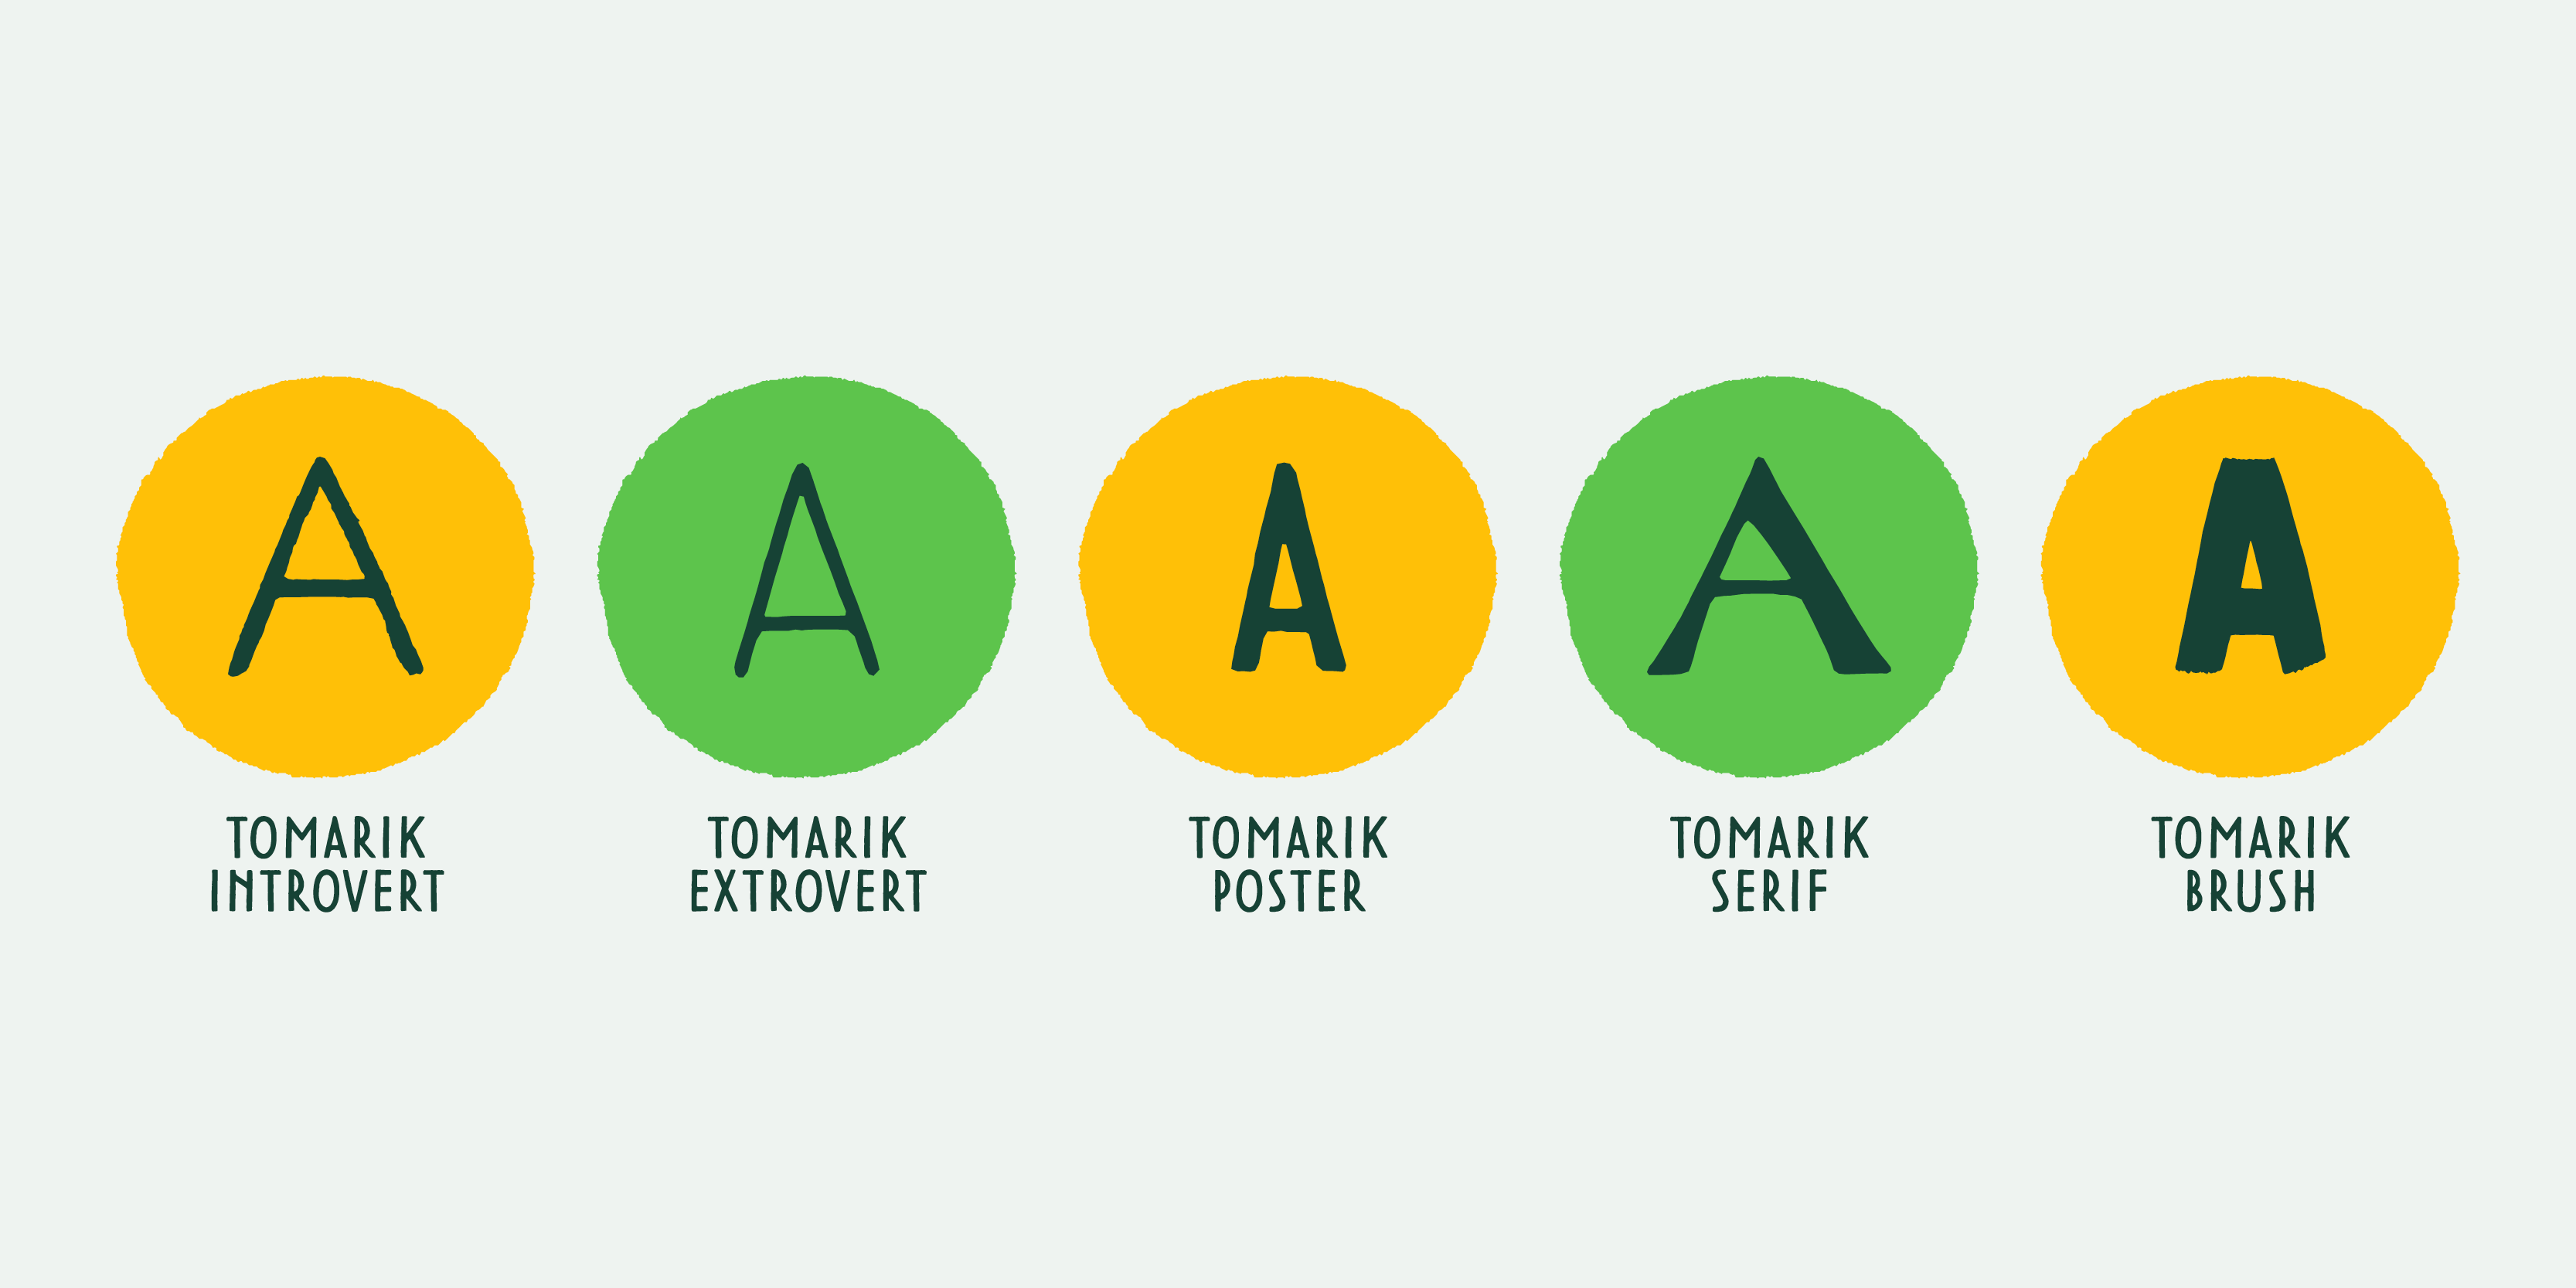 Card displaying Tomarik typeface in various styles